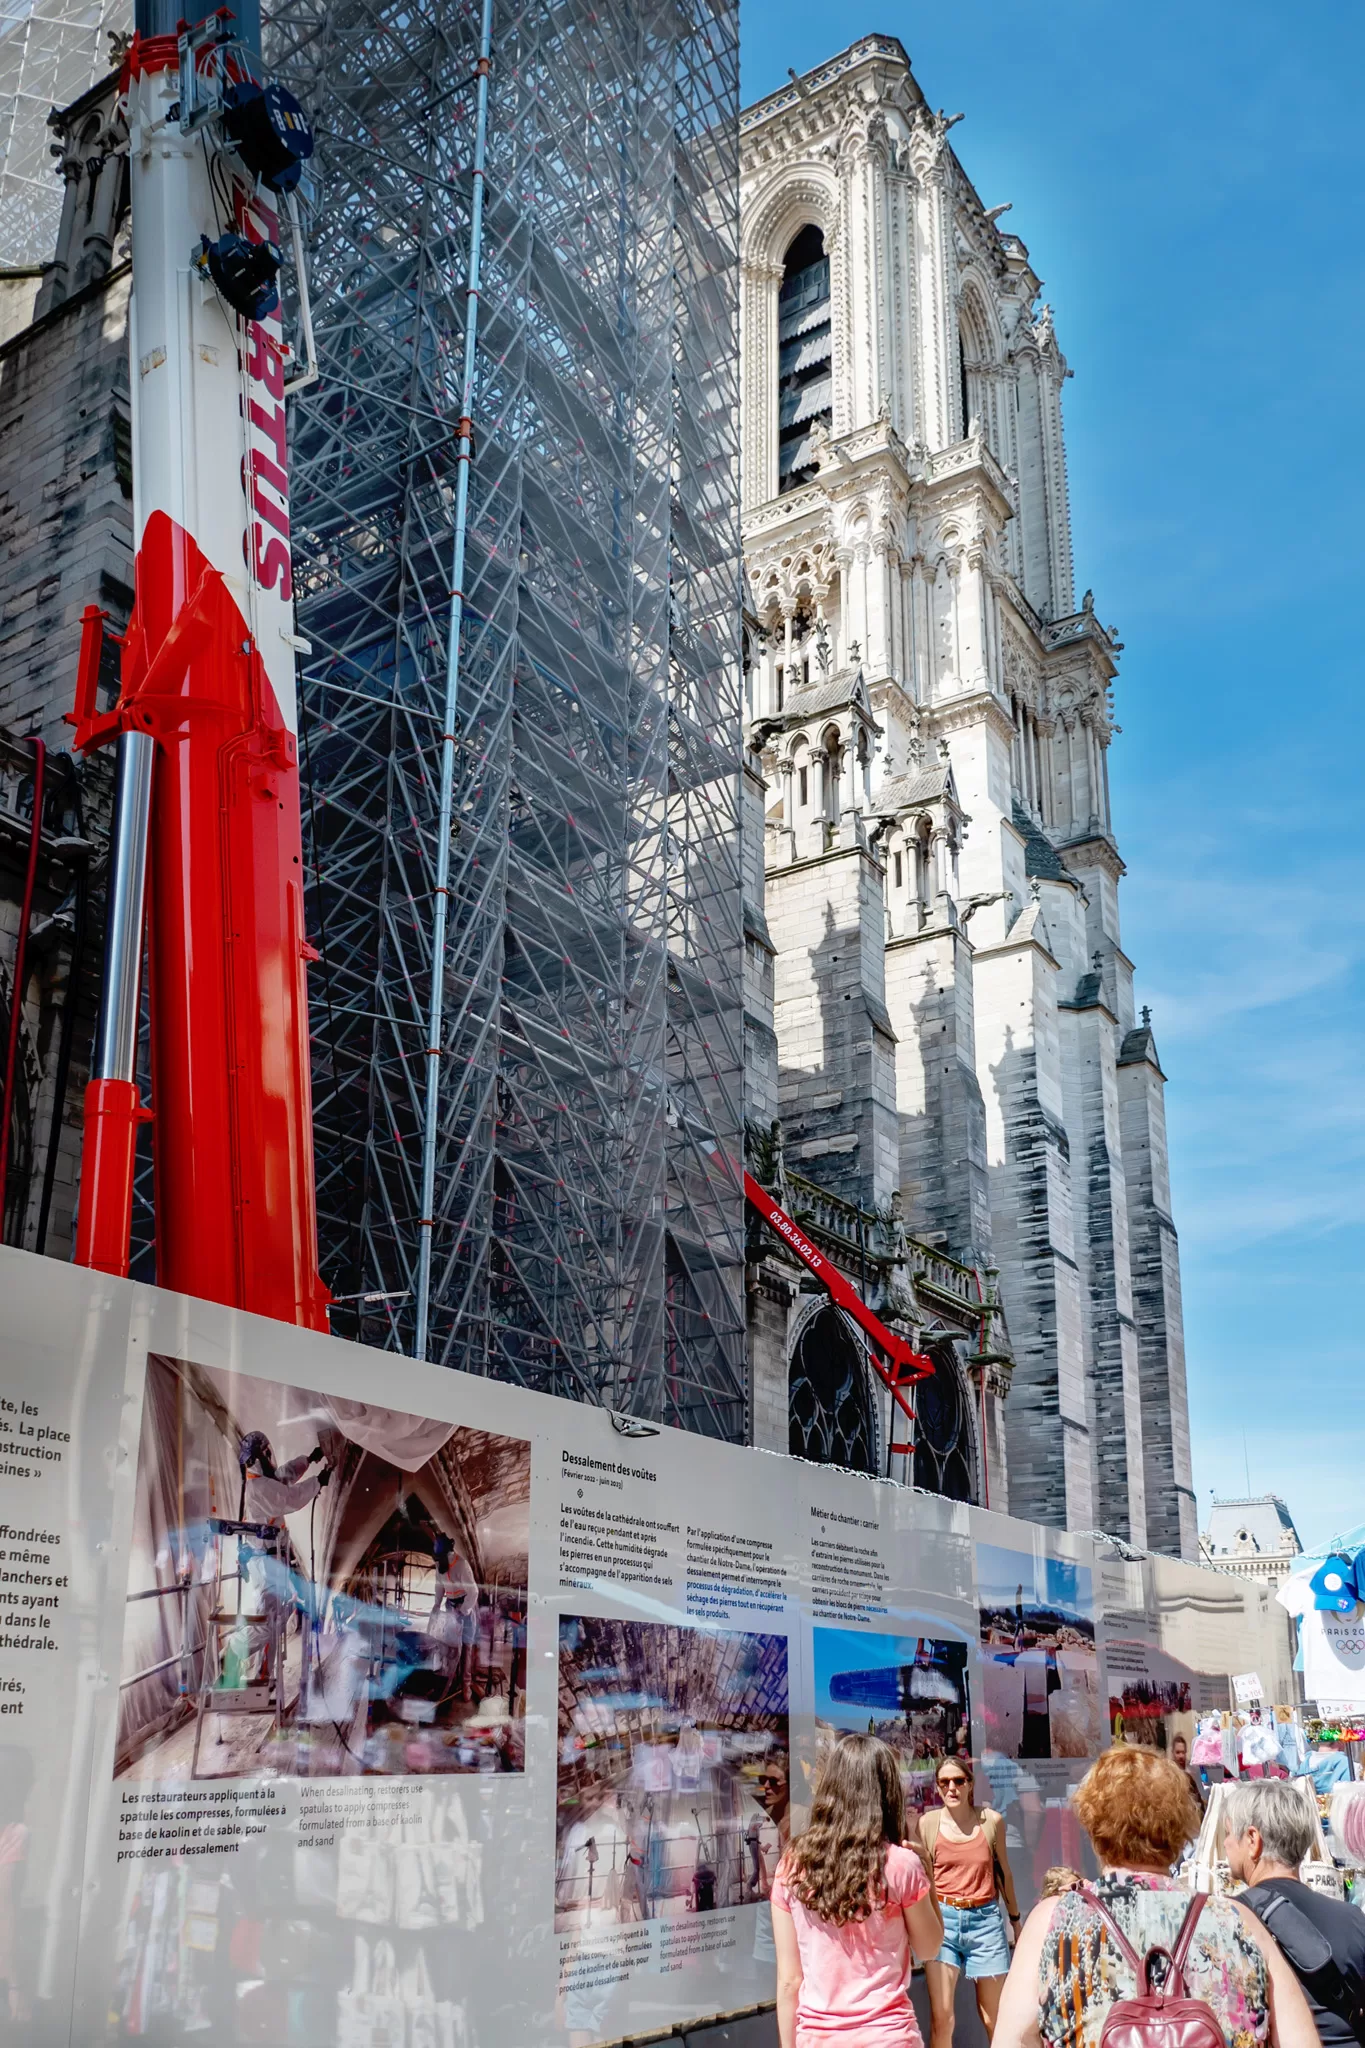 Notre Dame under construction in Paris